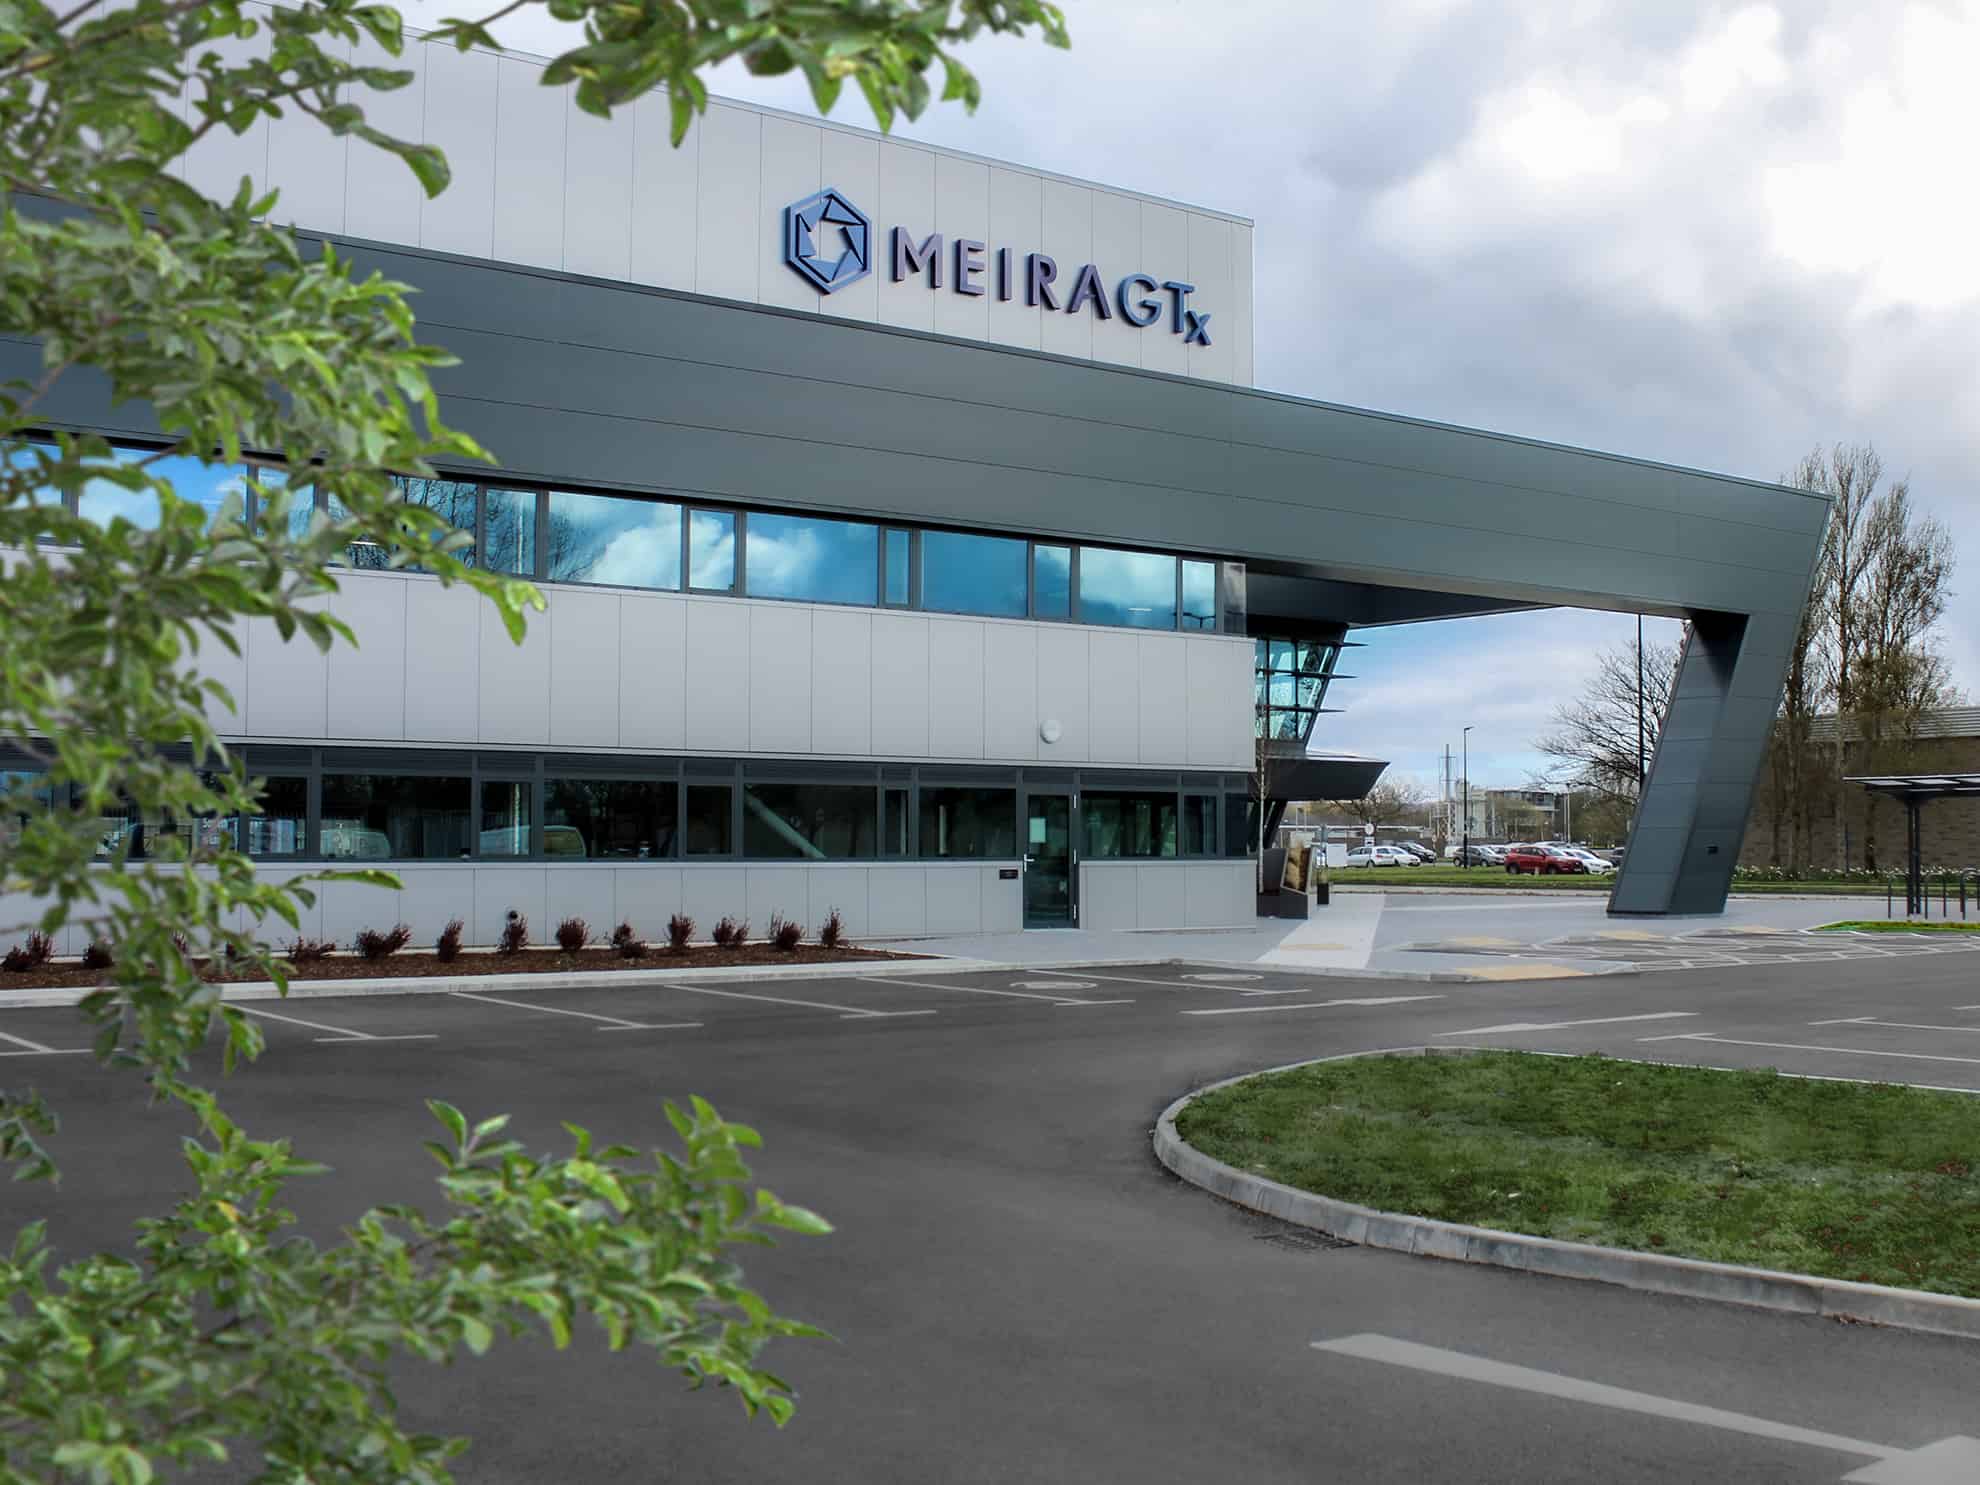 Meira GTx, Pharmaceutical Facility Photograph